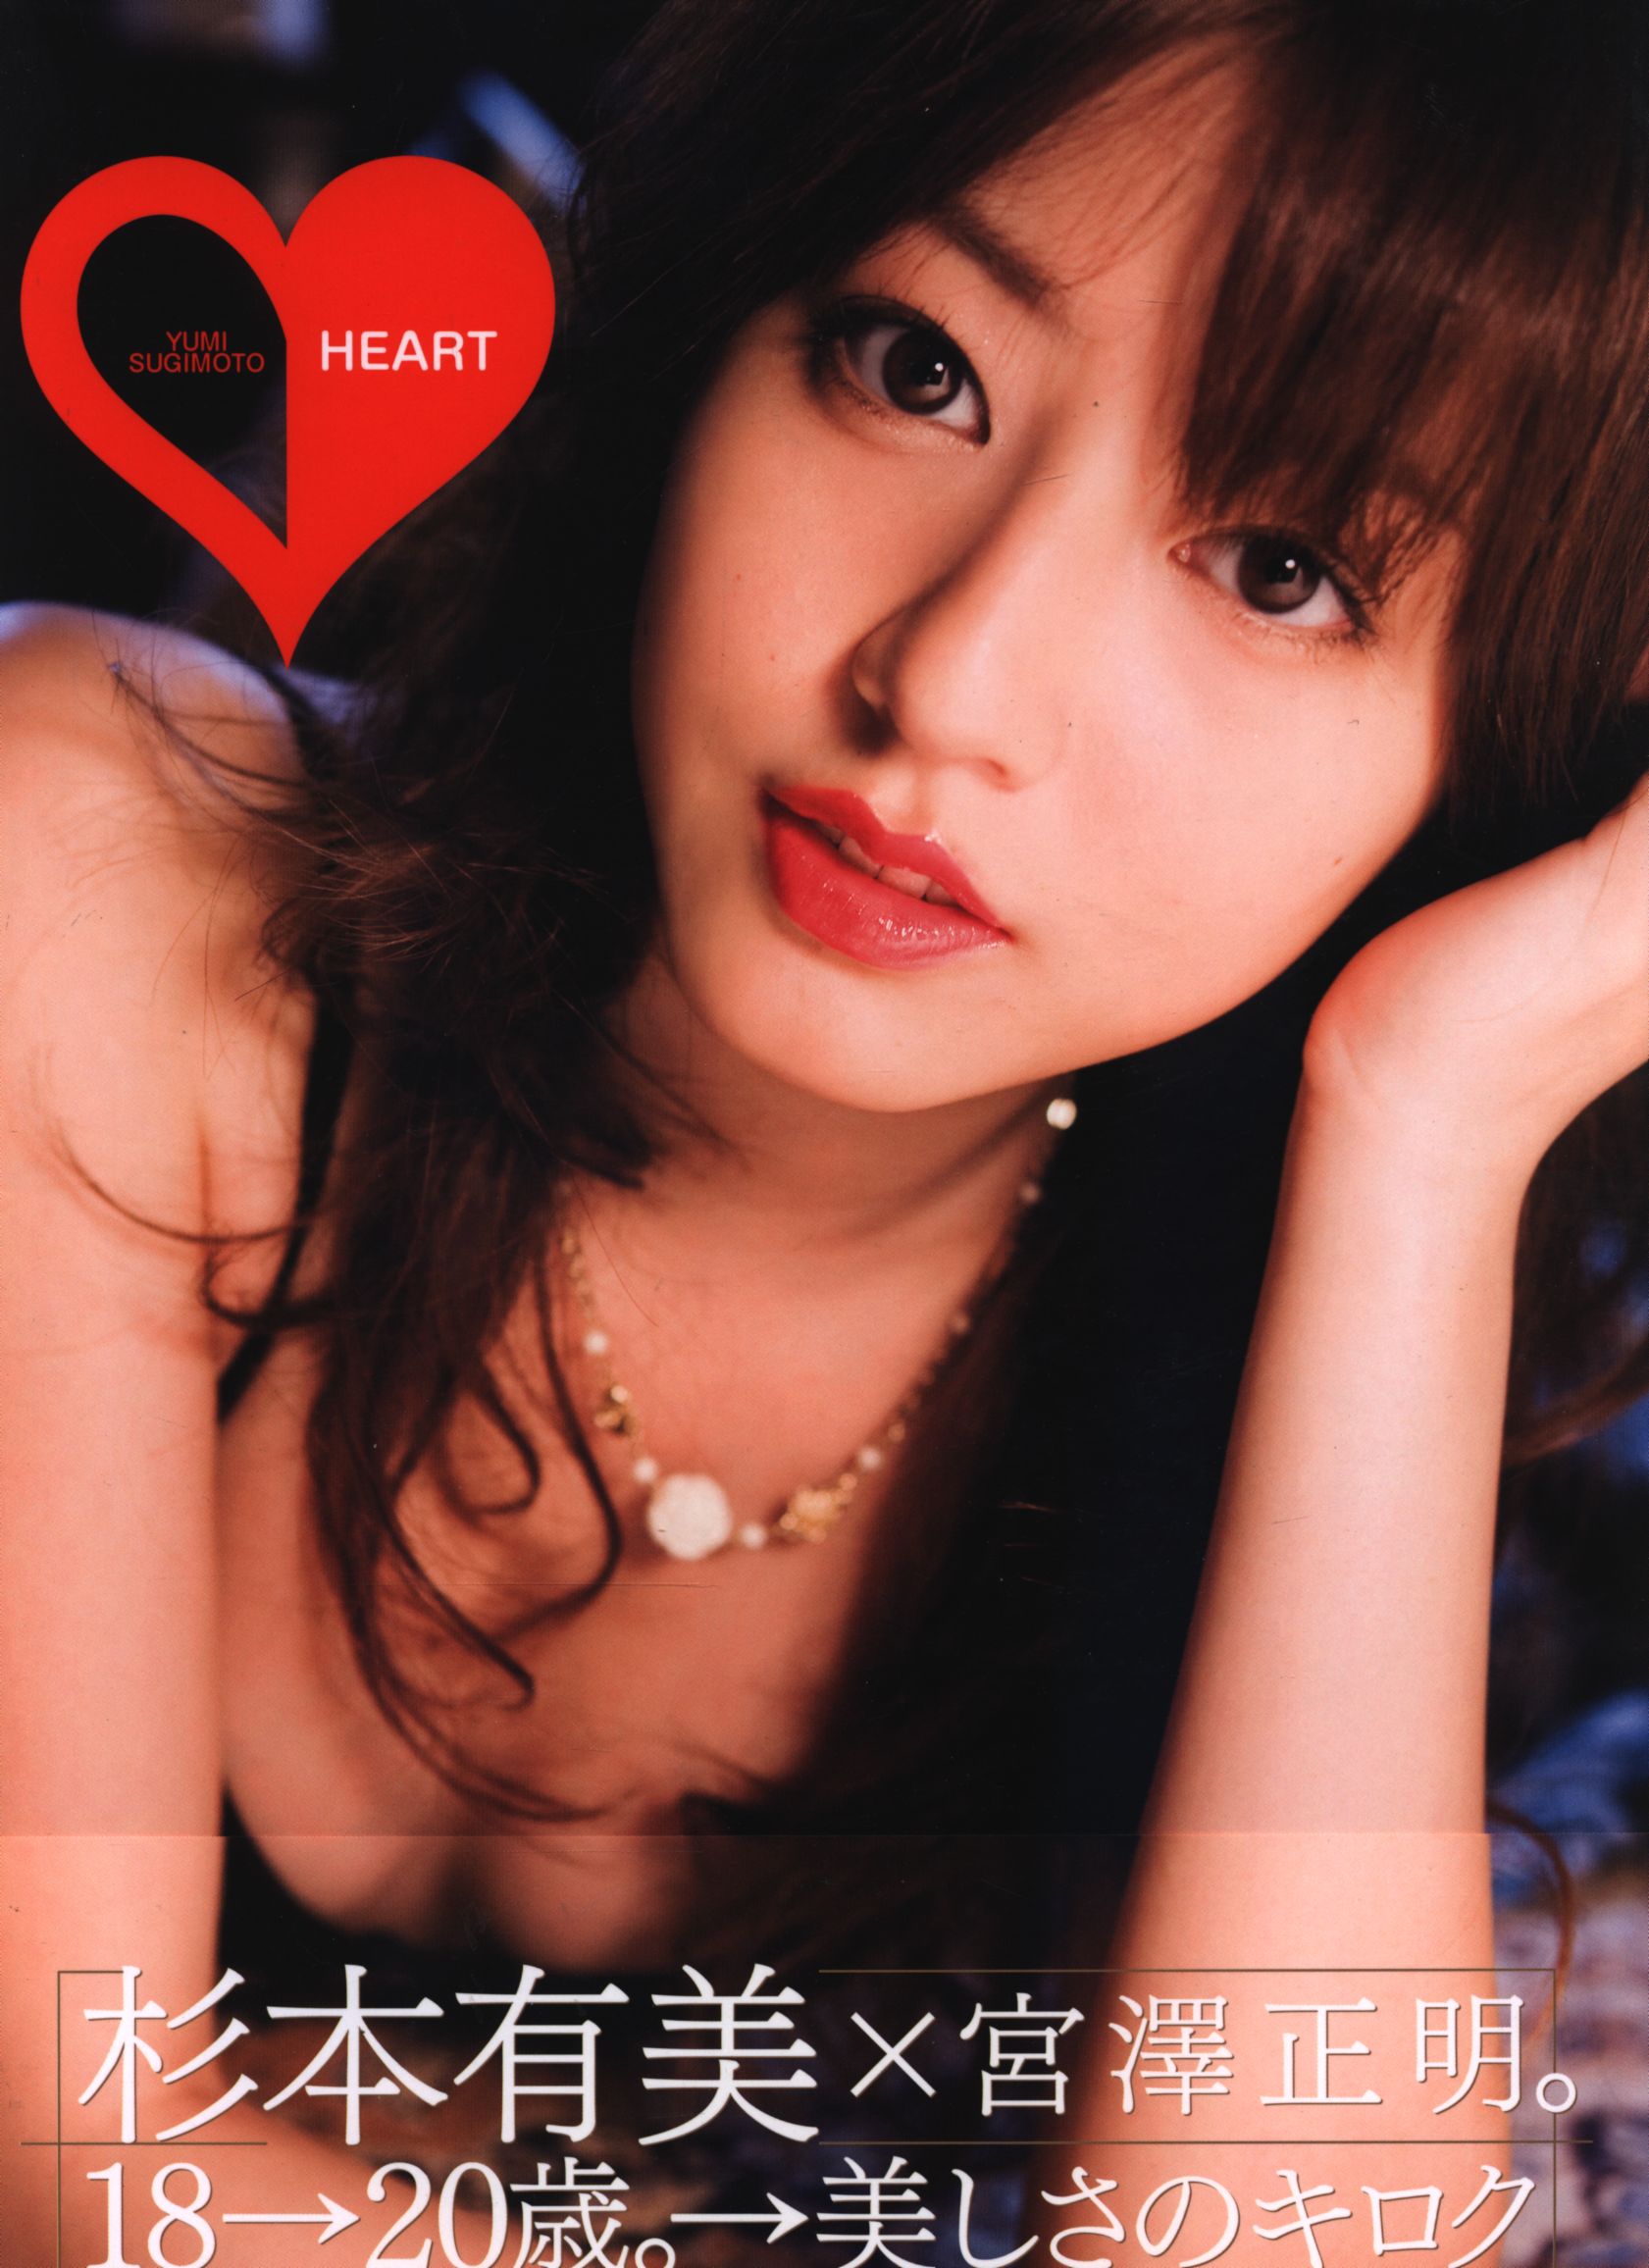 Yumi Sugimoto Sex - Yui Sugimoto HEART Sugimoto Yumi Photo Collection | Mandarake Online Shop